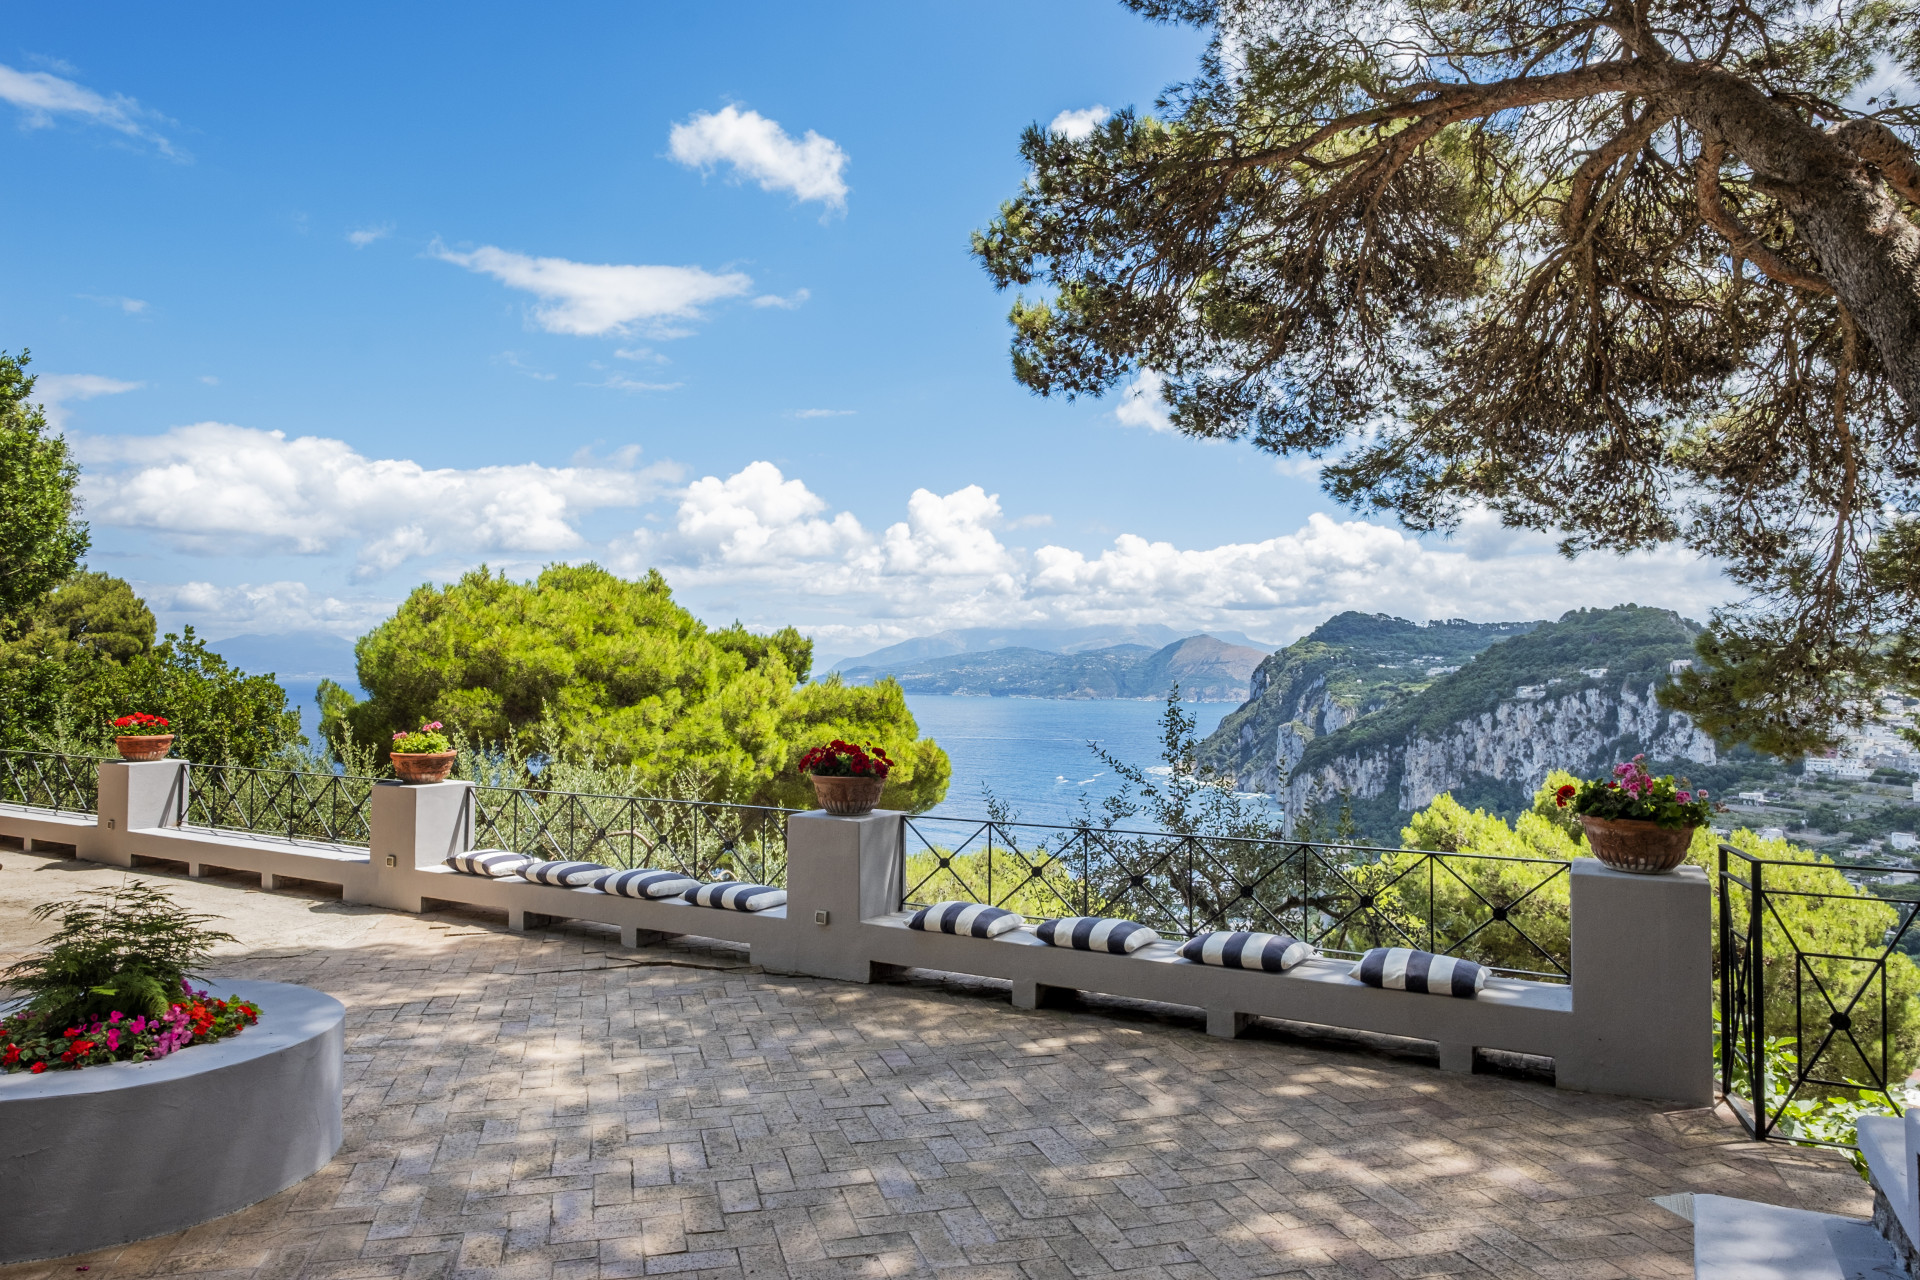 A massive estate in the heart of Capri